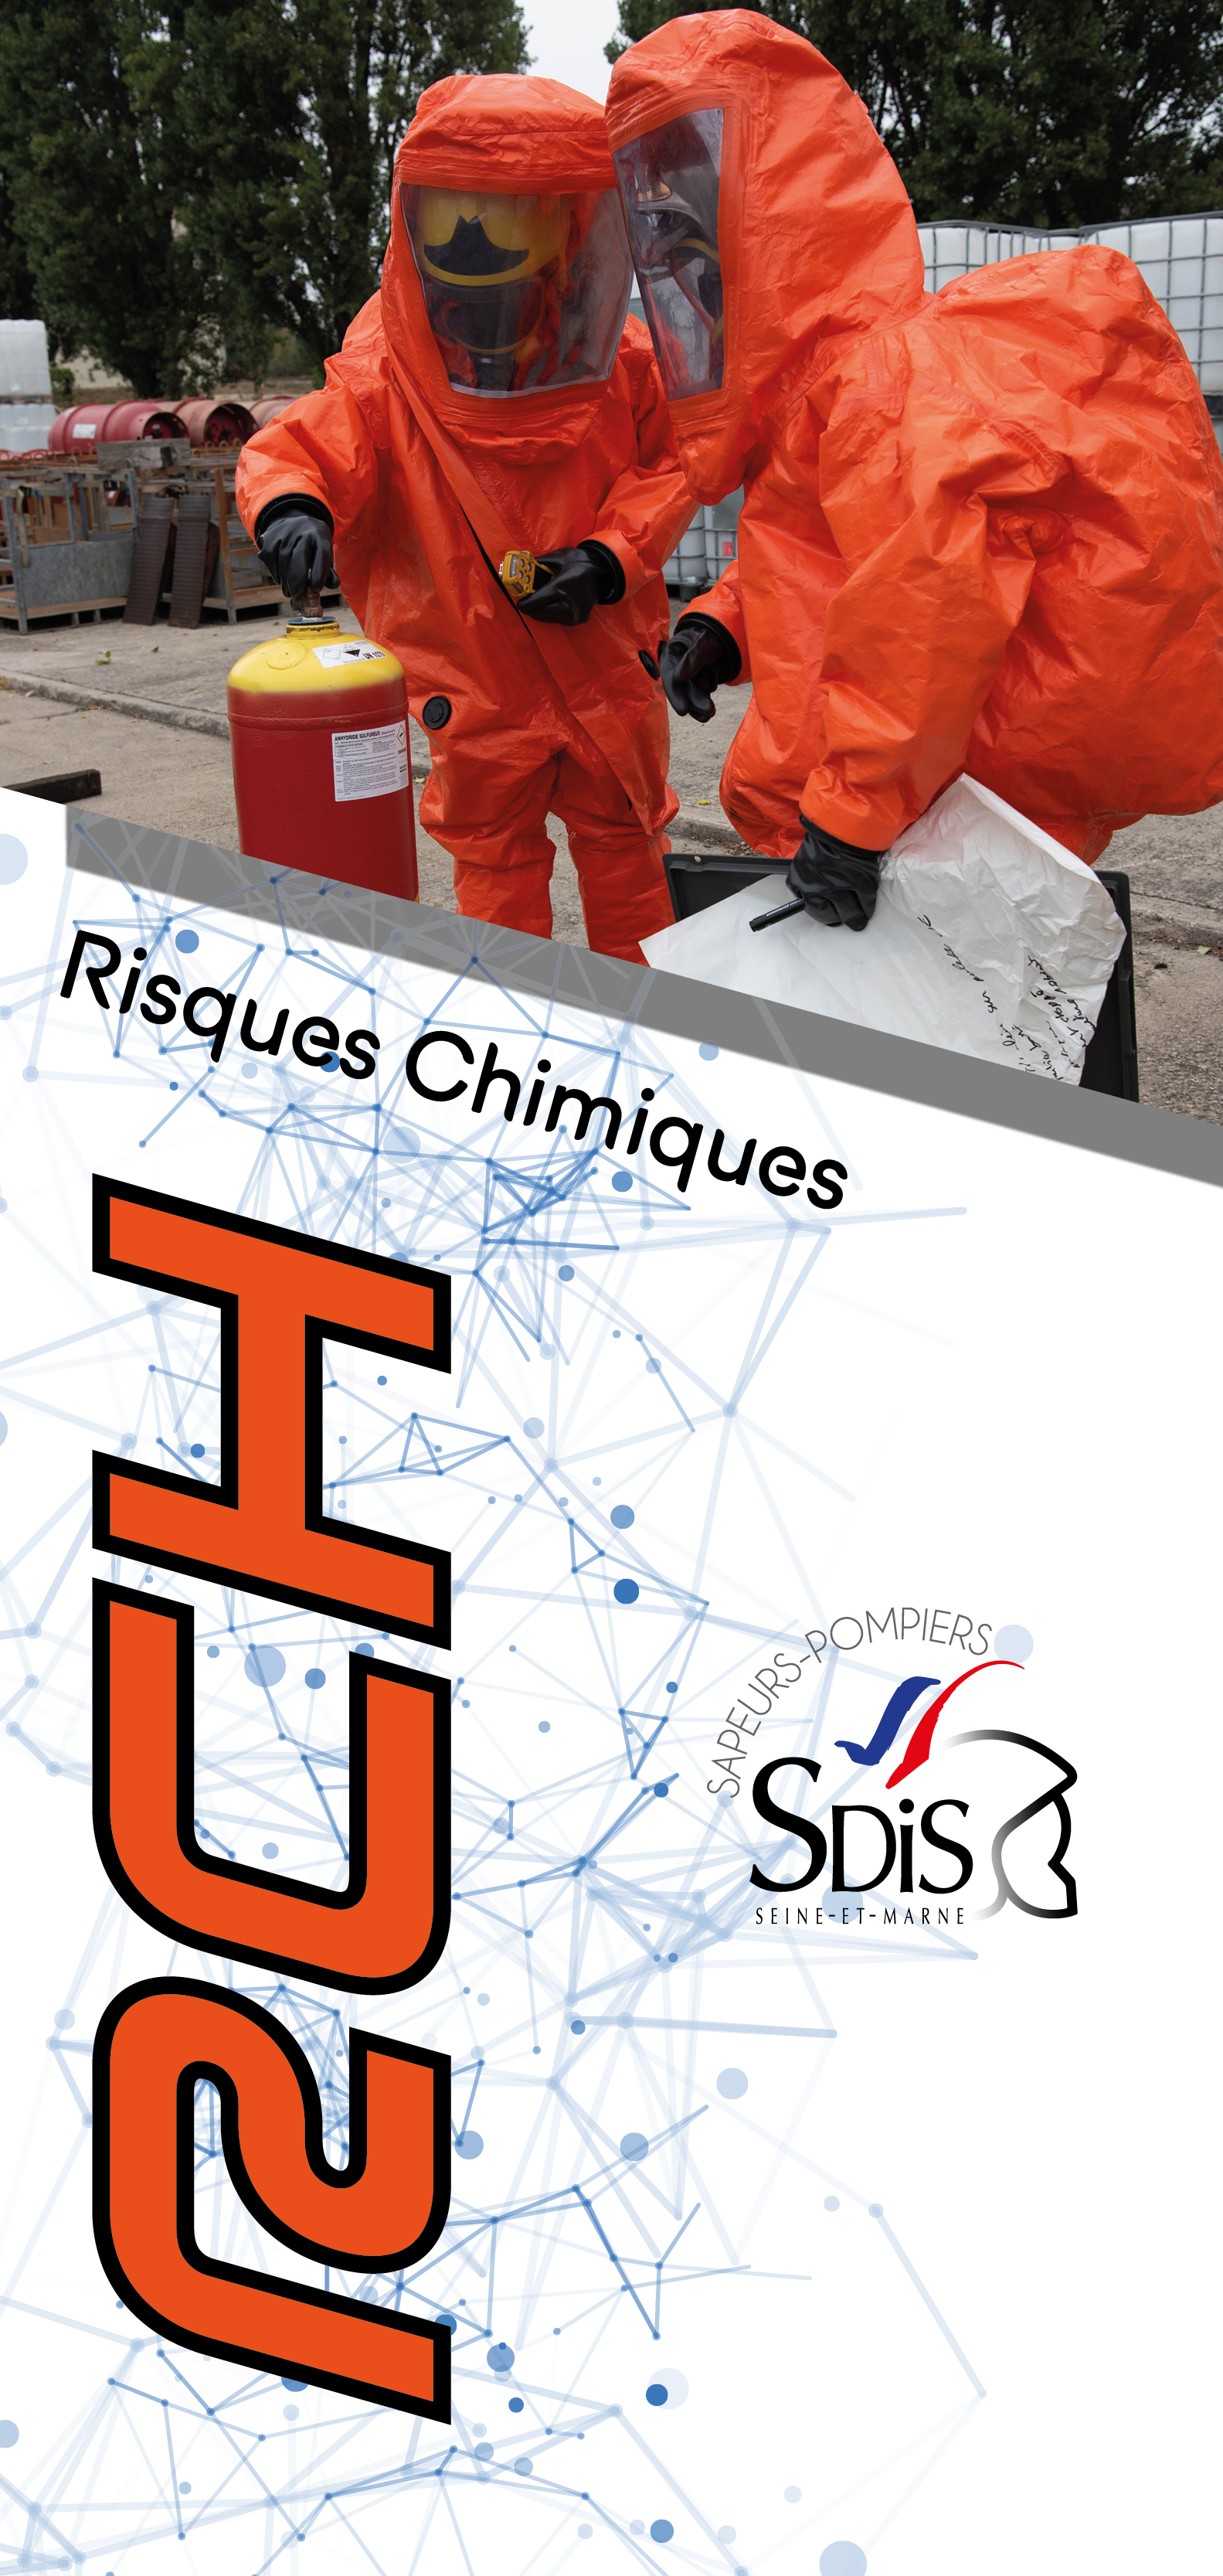 Service départemental d'incendie et de secours de Seine-et-Marne